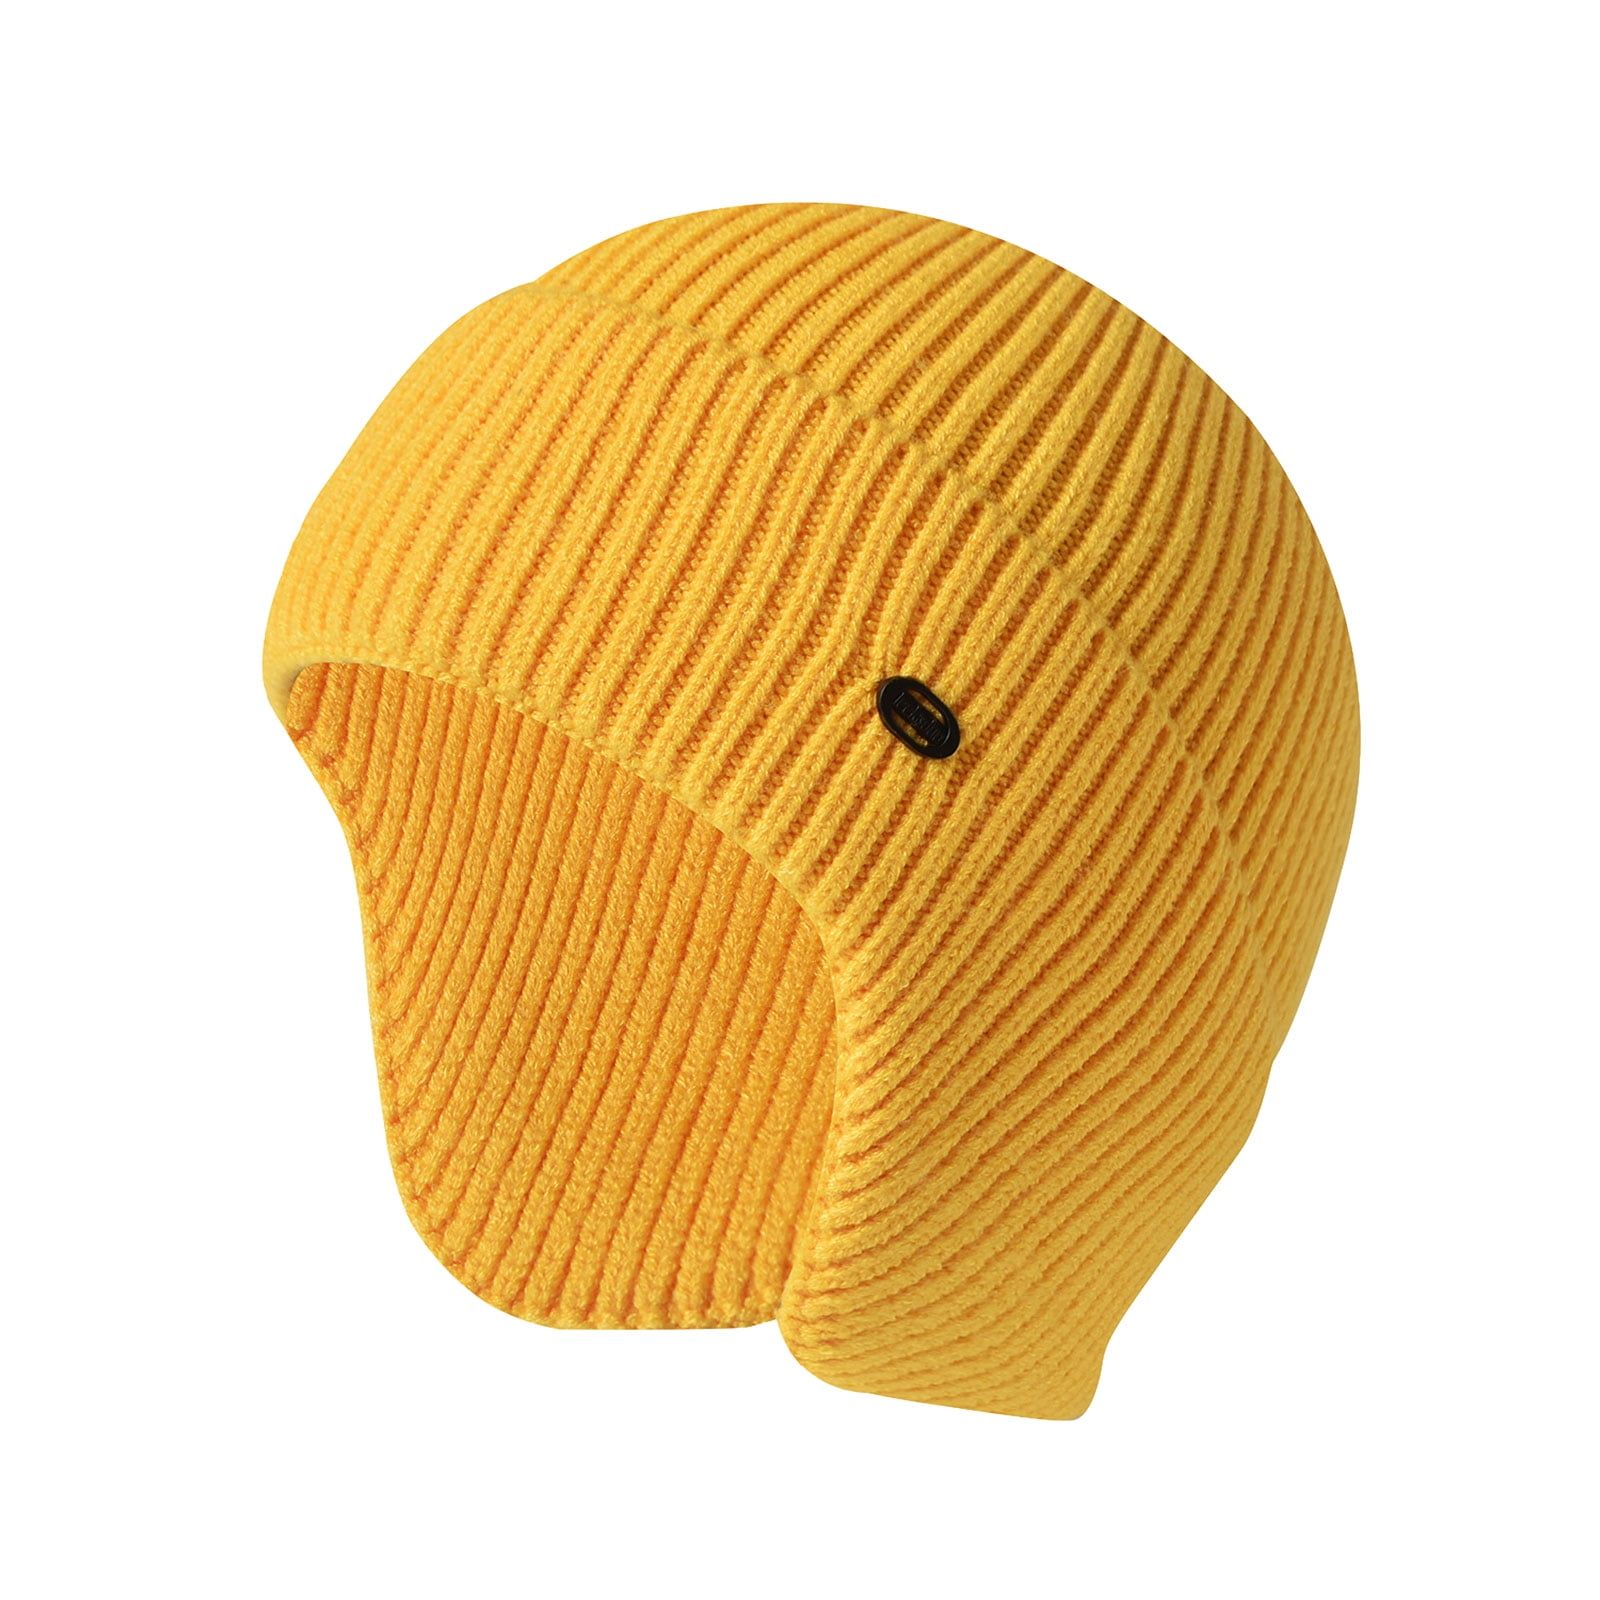 rinsvye Winter Hats For Men Women Fleece Lined Soft Warm Knit Hat Ski ...